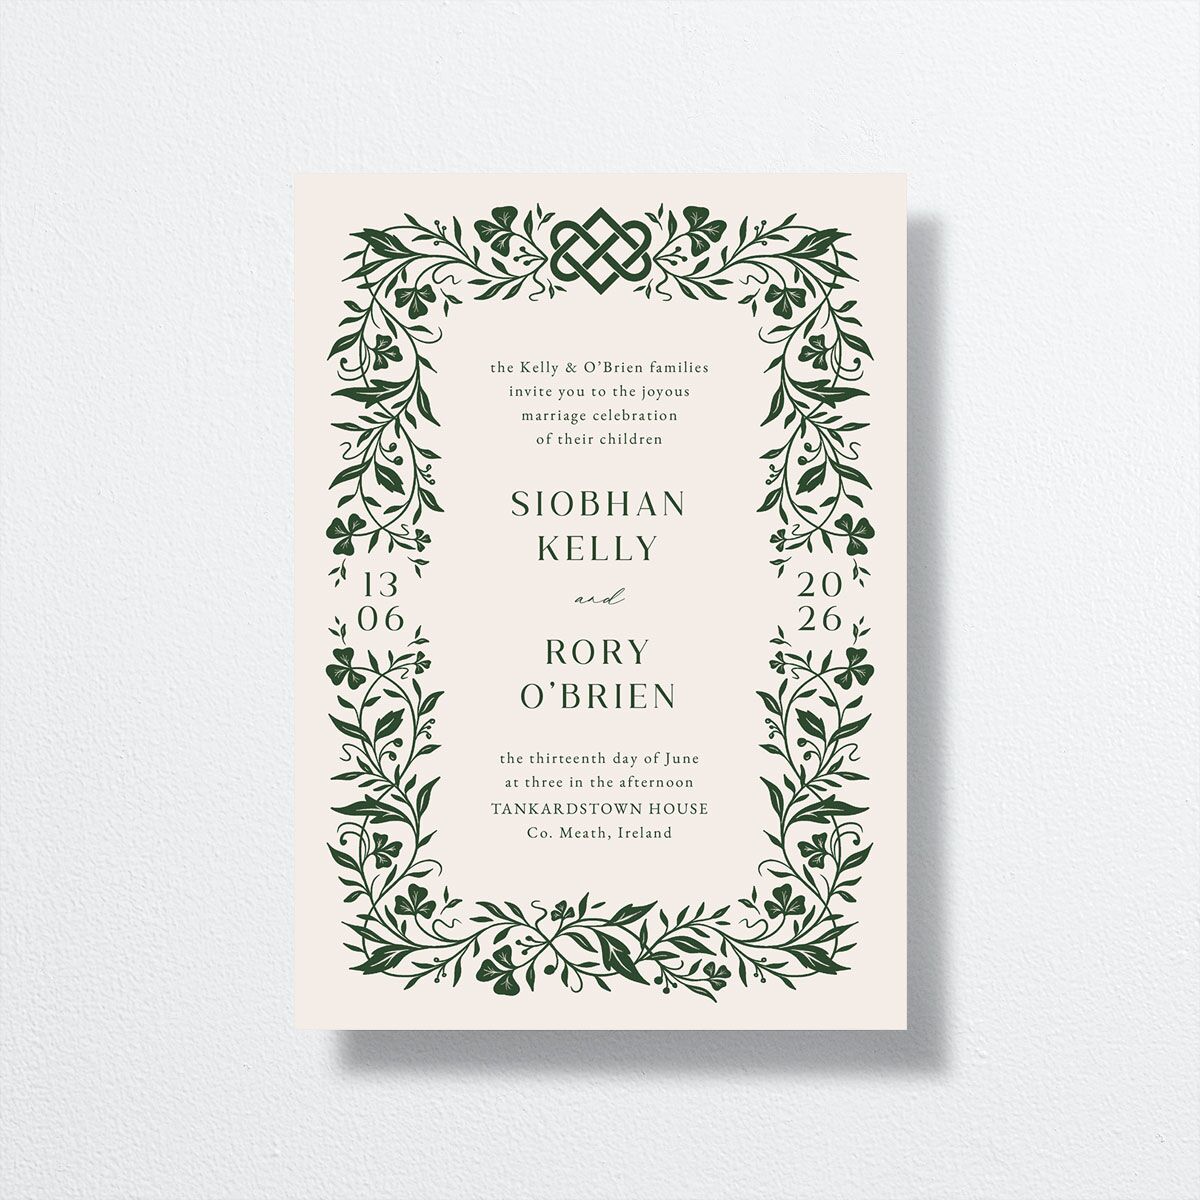 vellum paper wedding invitations